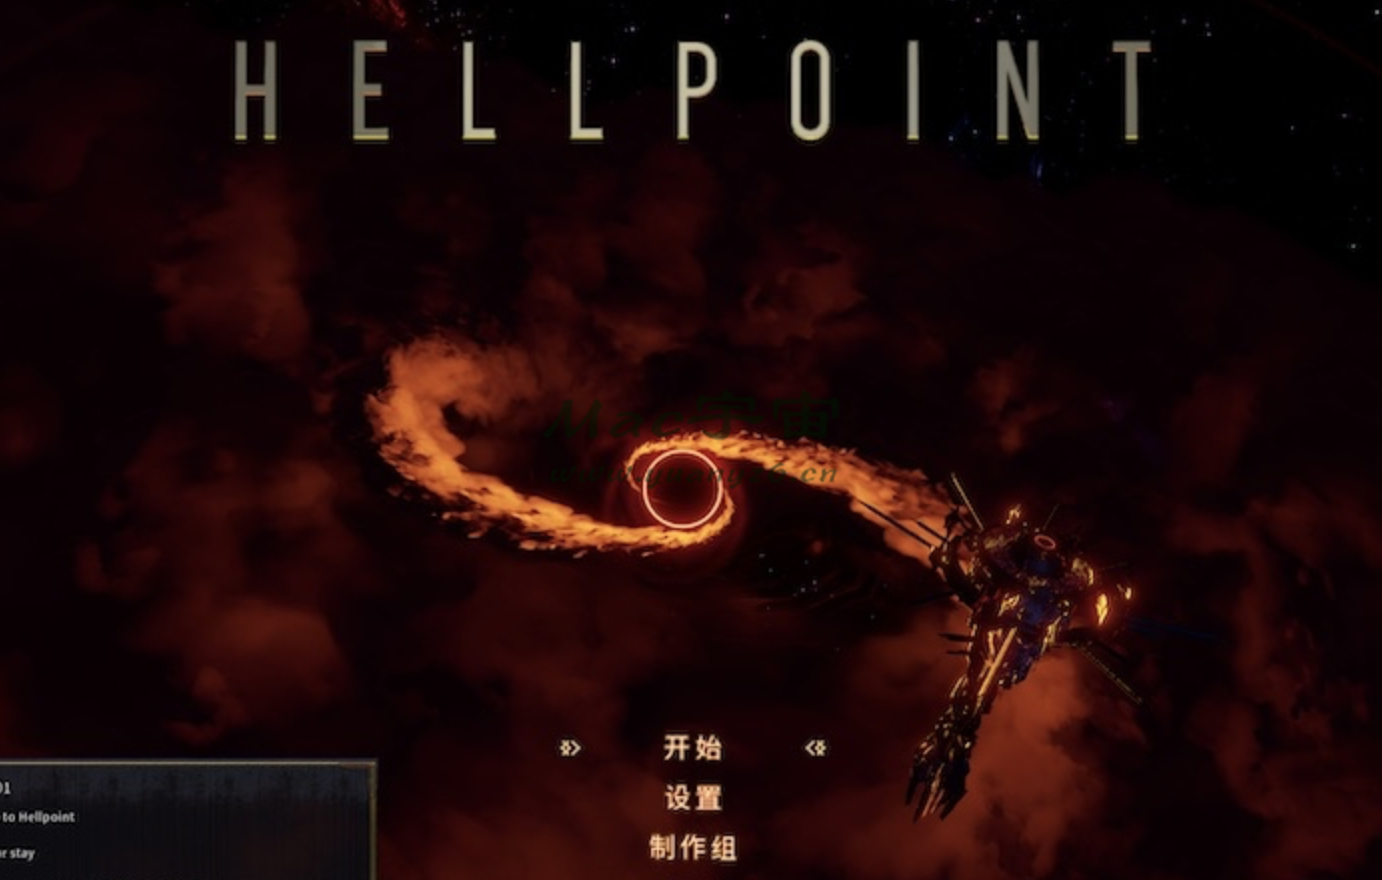 地狱时刻 for Mac v488 Hellpoint 苹果电脑